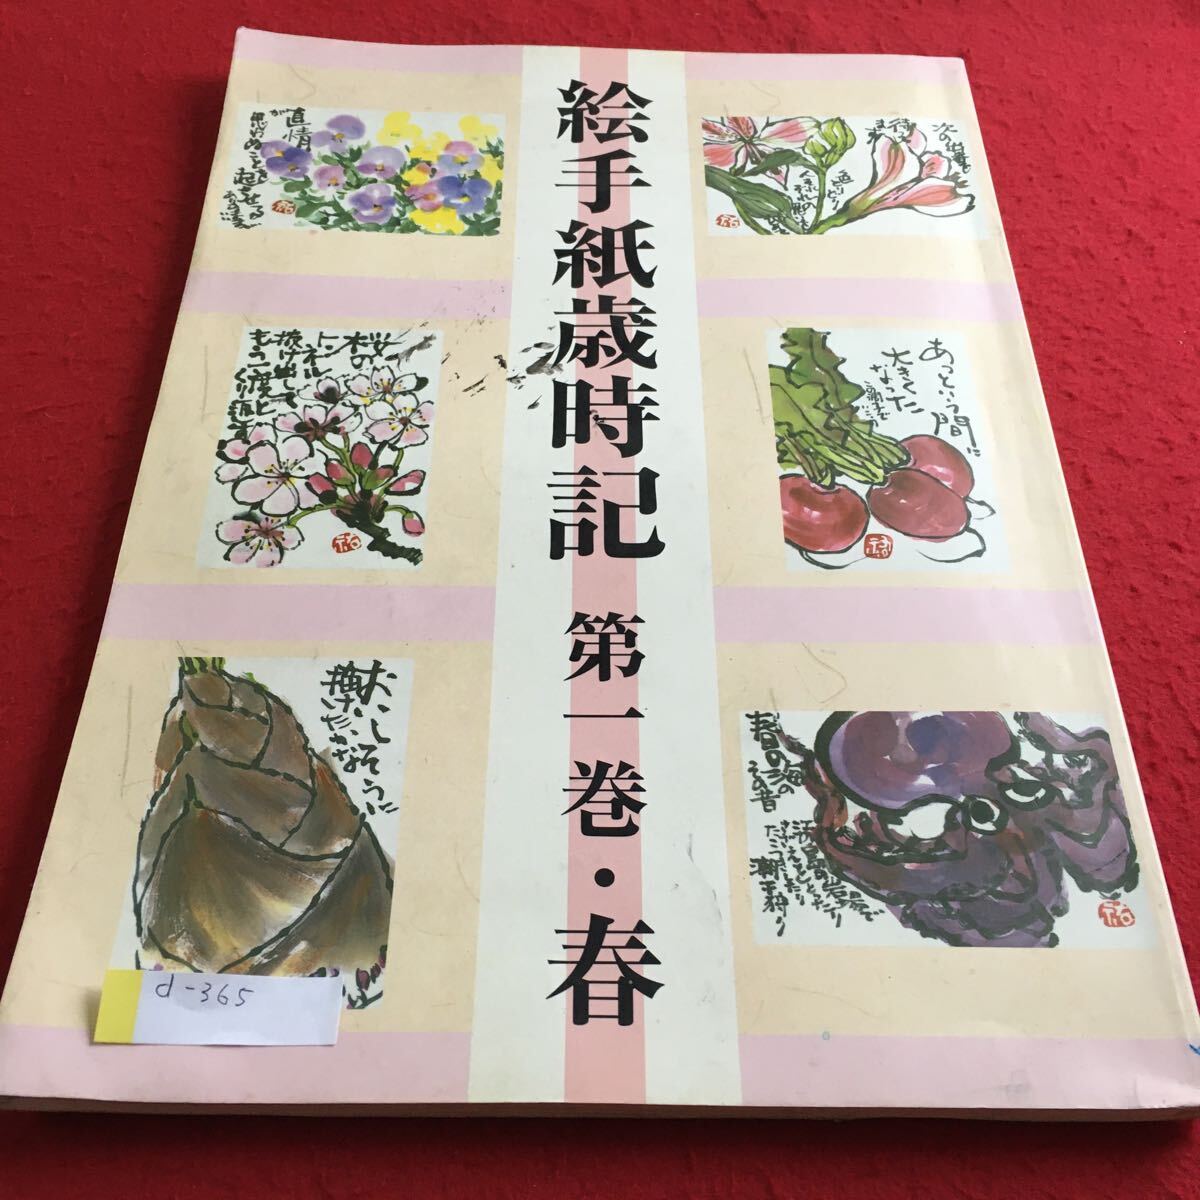 d-365 图画信西事记第 1 卷 春季日本艺术教育中心 *4, 艺术, 娱乐, 绘画, 技术书